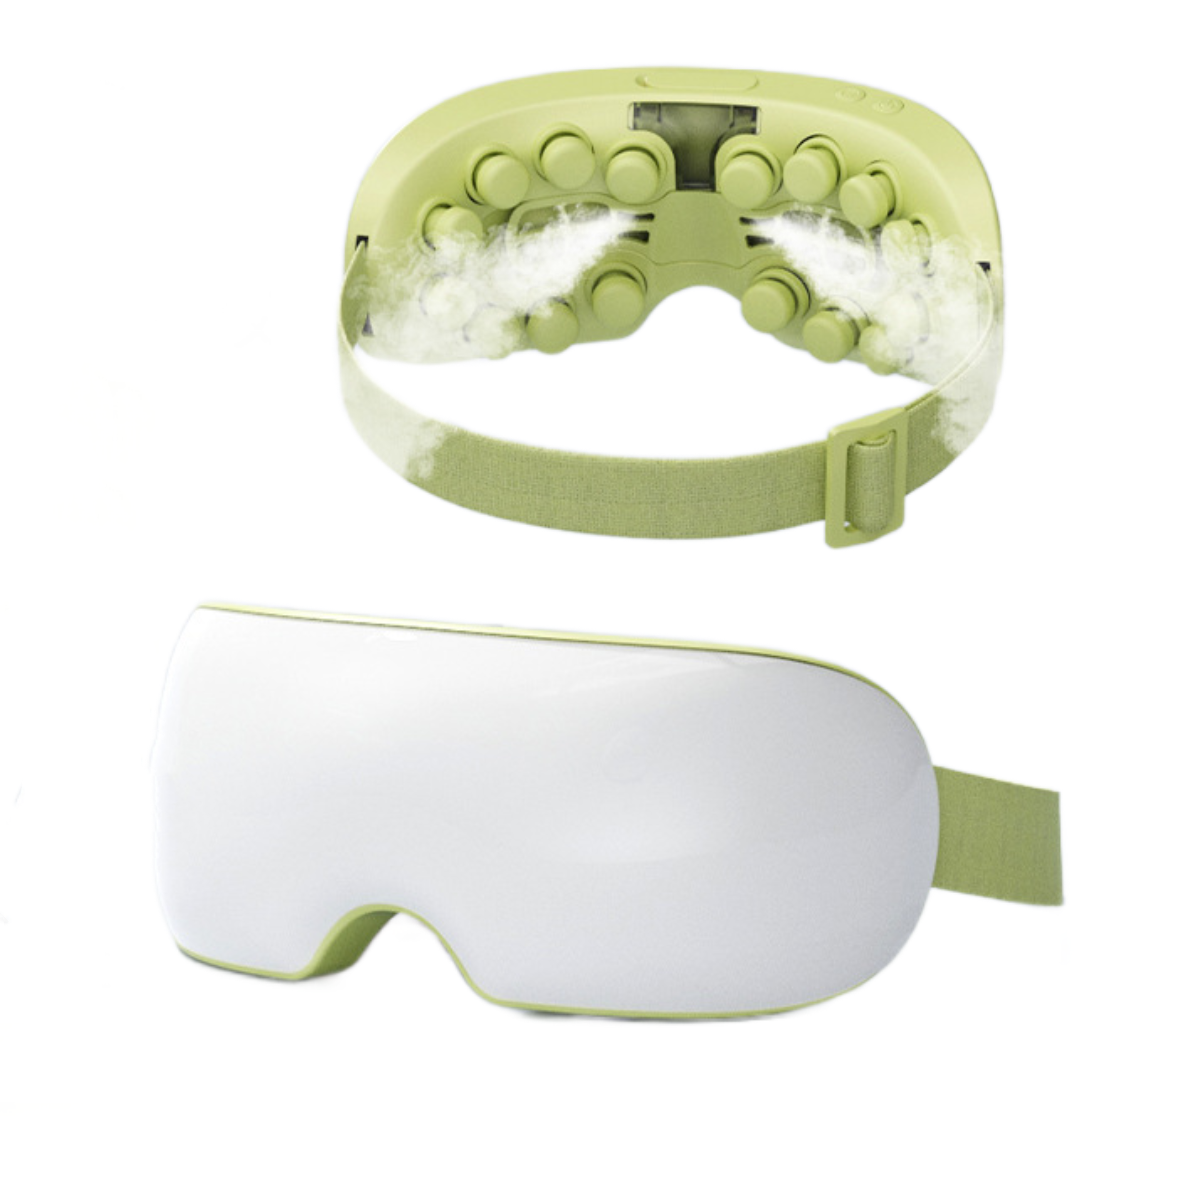 Luftdruckmassage, Augenschutzgerät: UWOT Dampfkompresse, °C 42 Gesichtsmassagegerät Grün Bluetooth-Musik Heiße